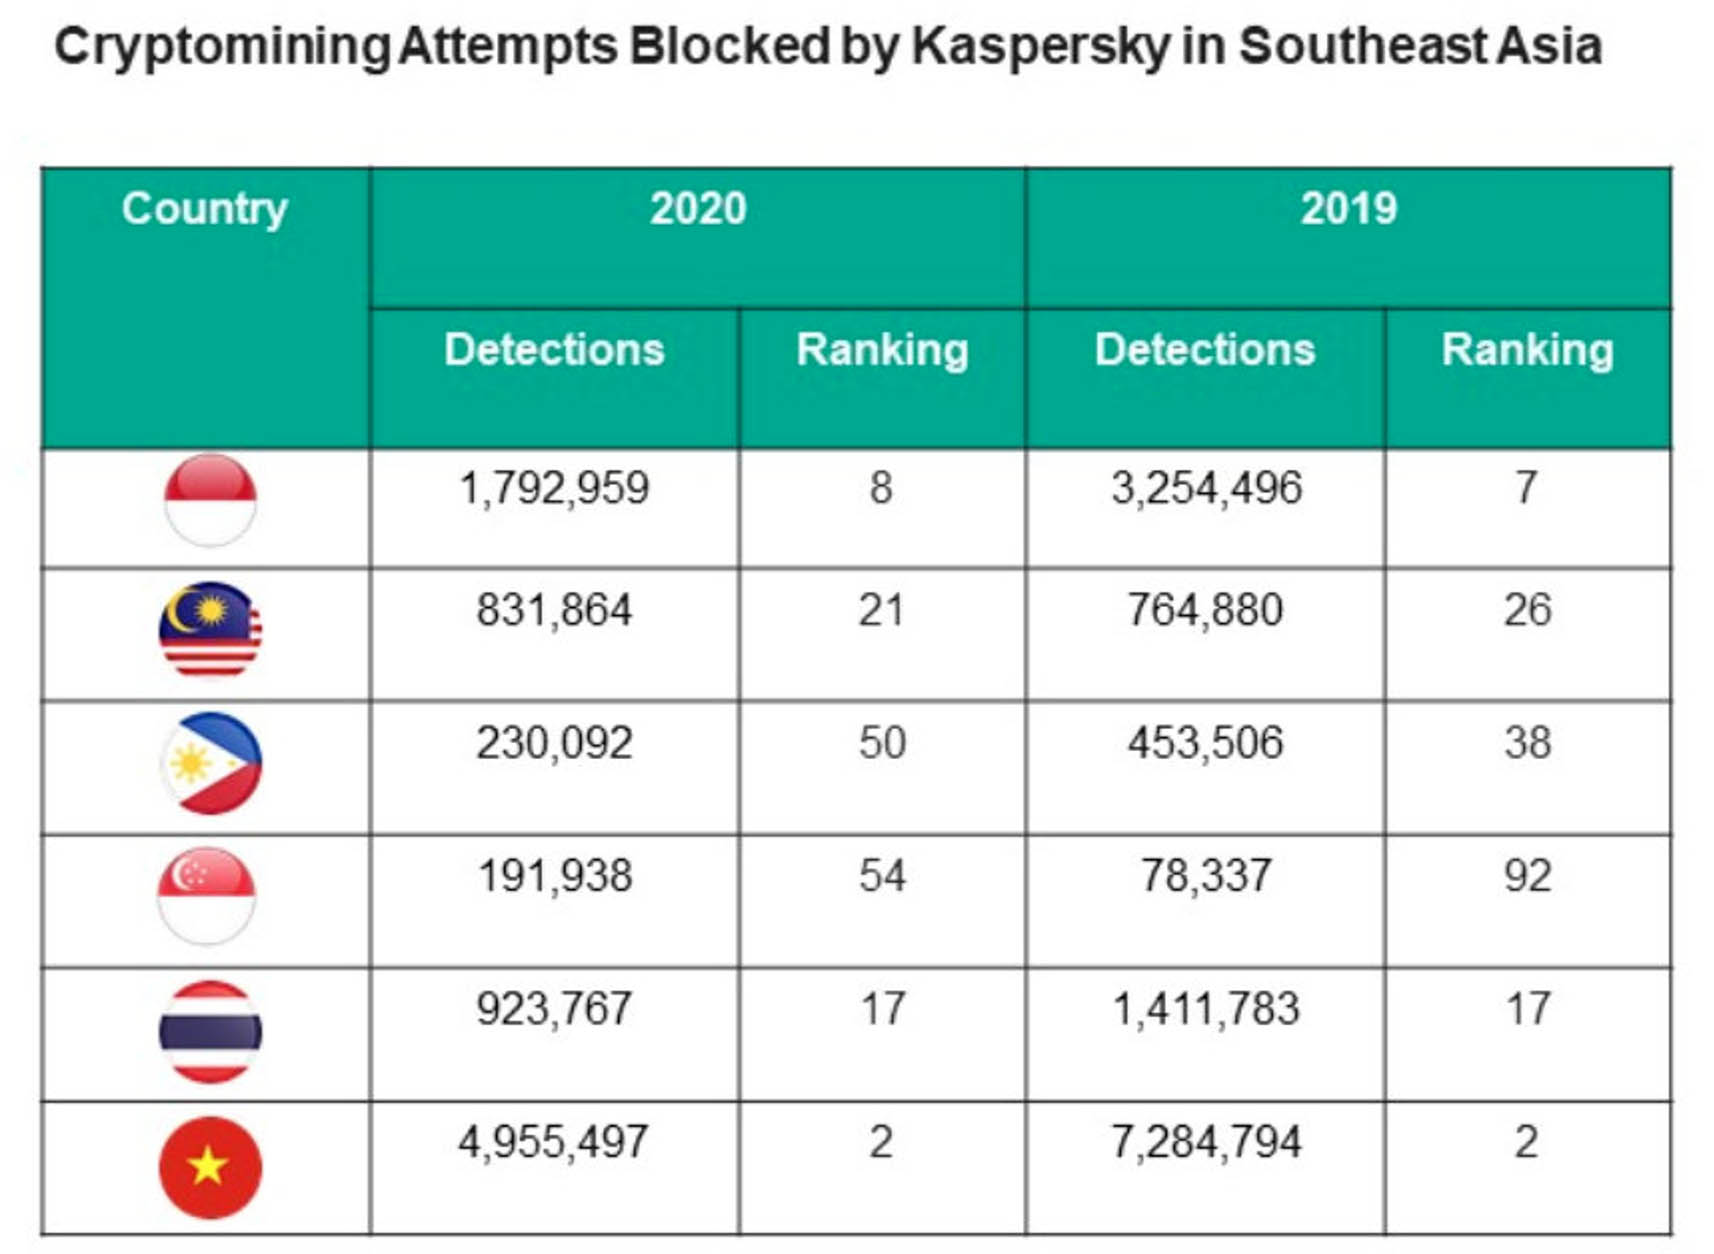 Kaspersky ngăn chặn gần 9 triệu mã độc đào tiền ảo trong các doanh nghiệp vừa và nhỏ khu vực Đông Nam Á năm 2020